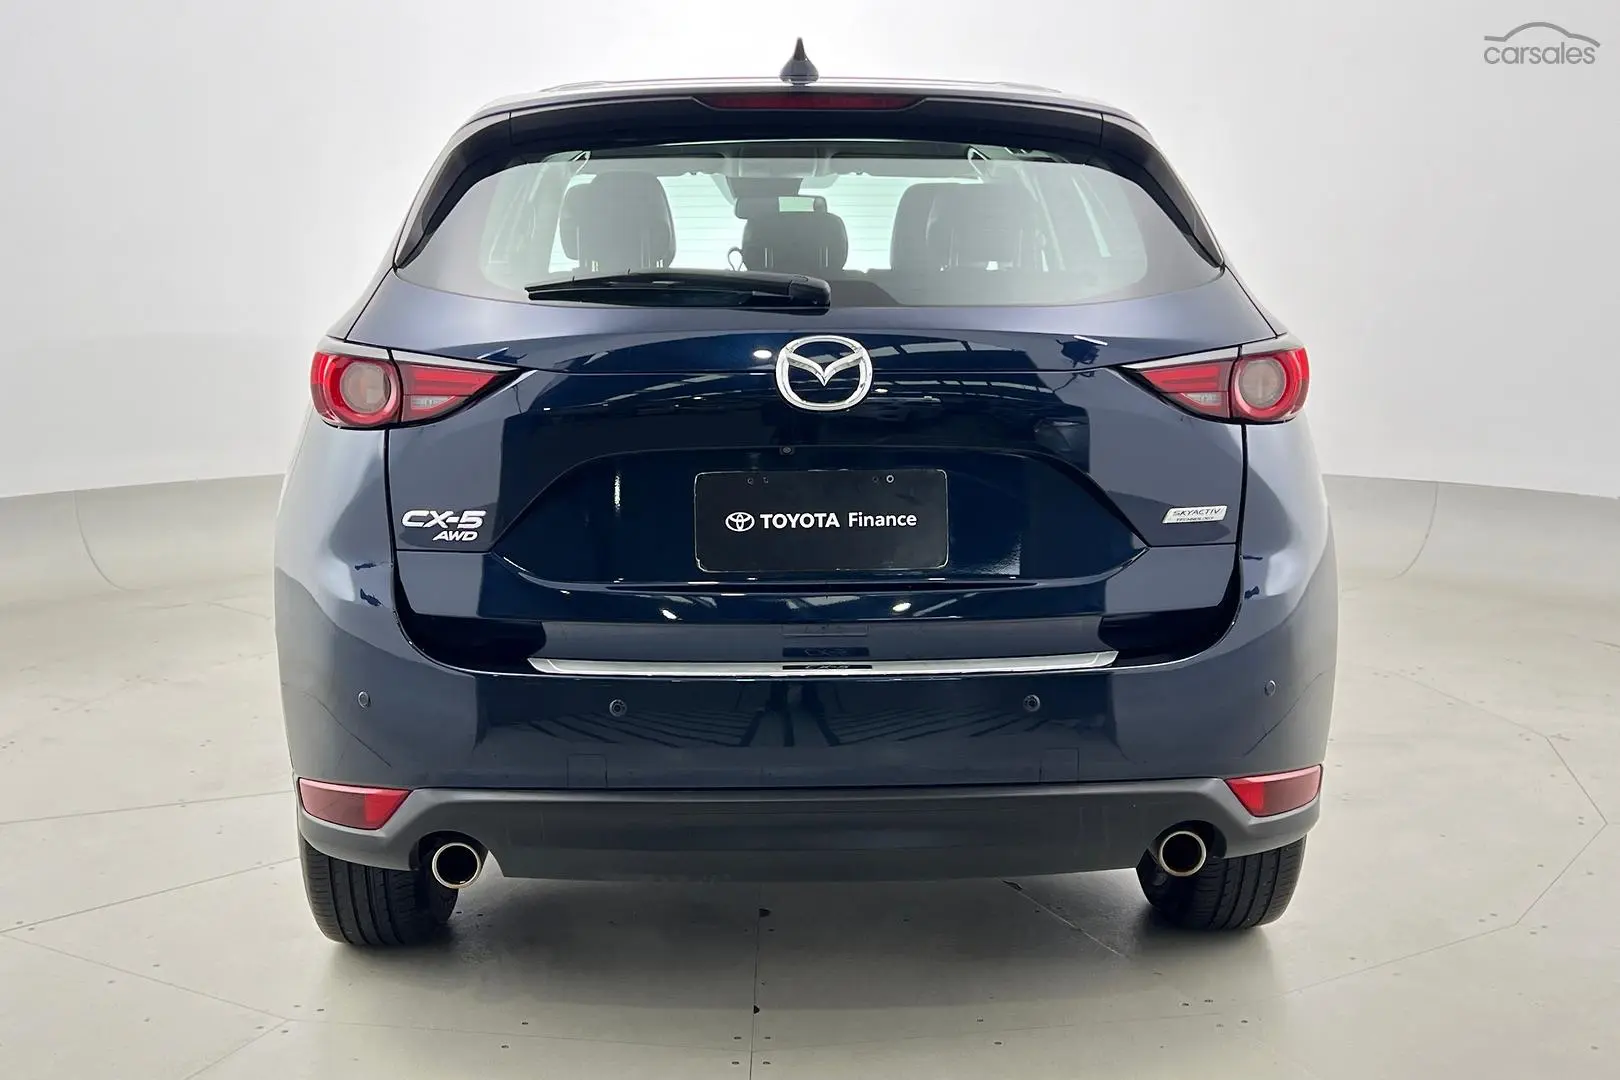 2019 Mazda CX-5 Image 6